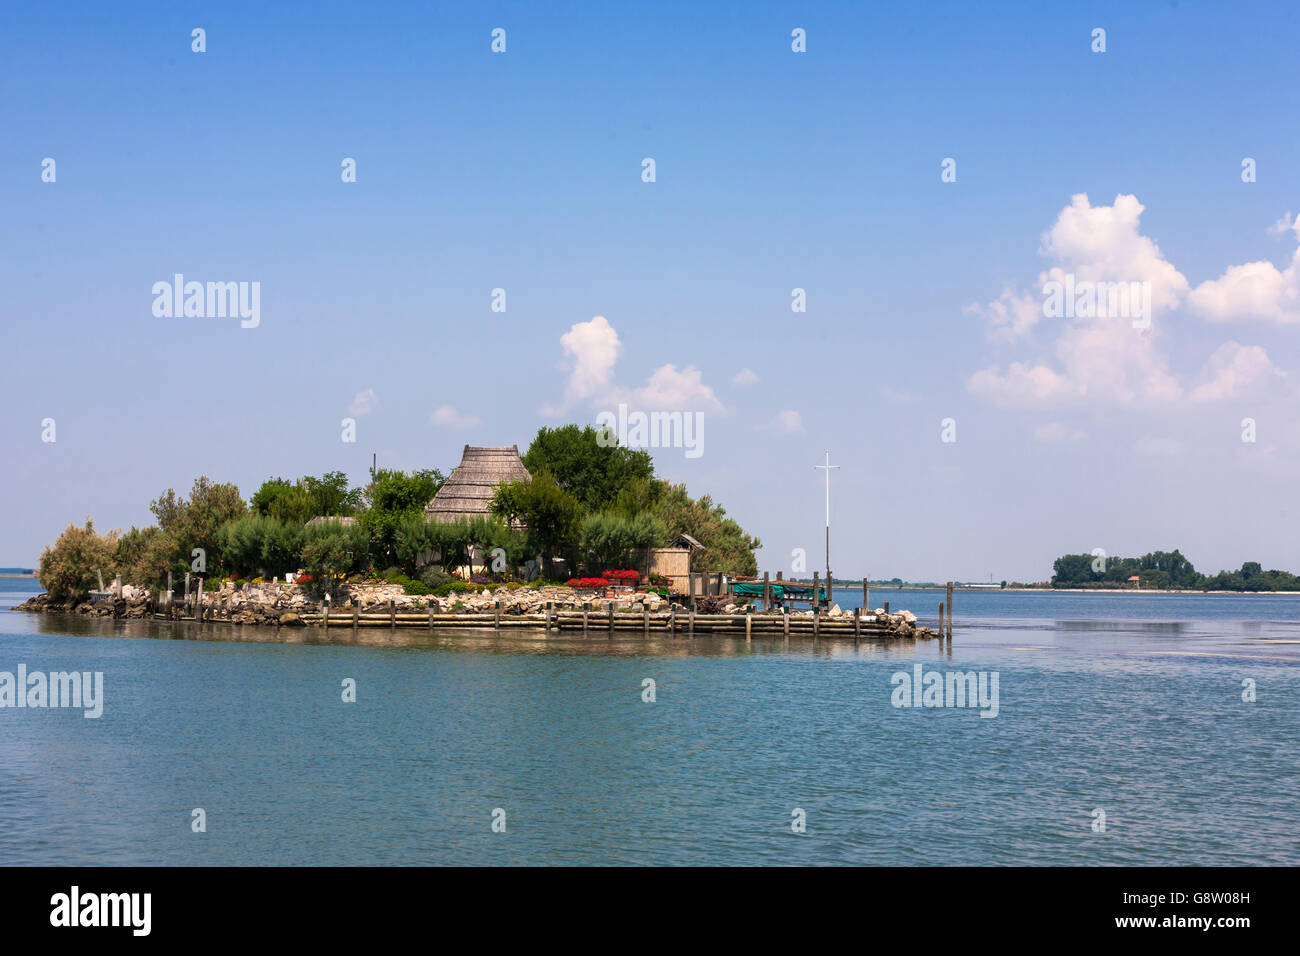 A tiny island with a fisherman's "casoni" in Laguna di Grado, Friuli-Venezia Giulia, Italy Stock Photo